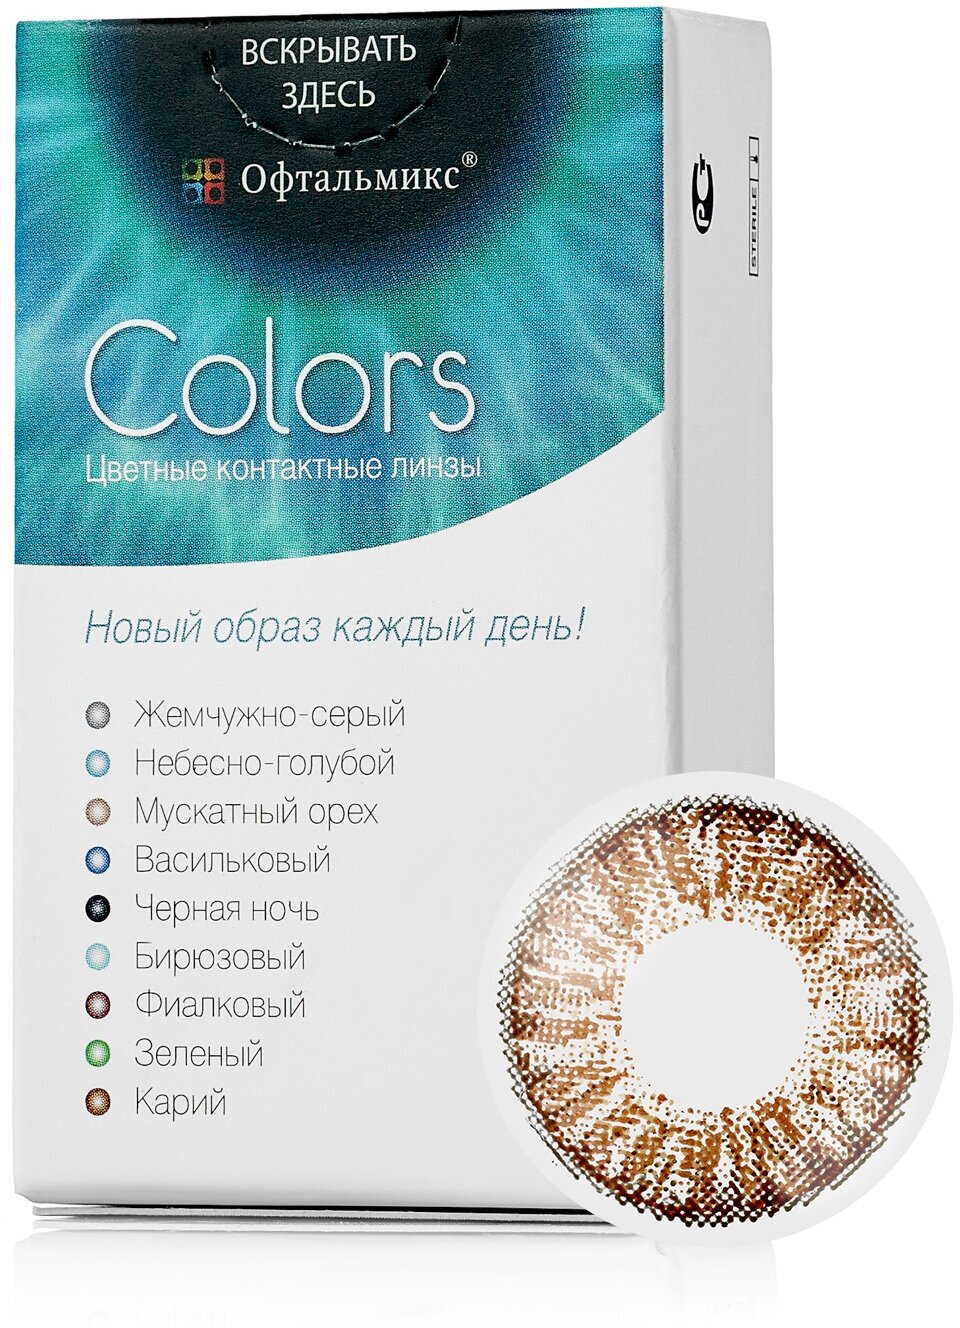 Цветные контактные линзы Офтальмикс Color Brown (карий) R8.6 -7.0D (2шт.)